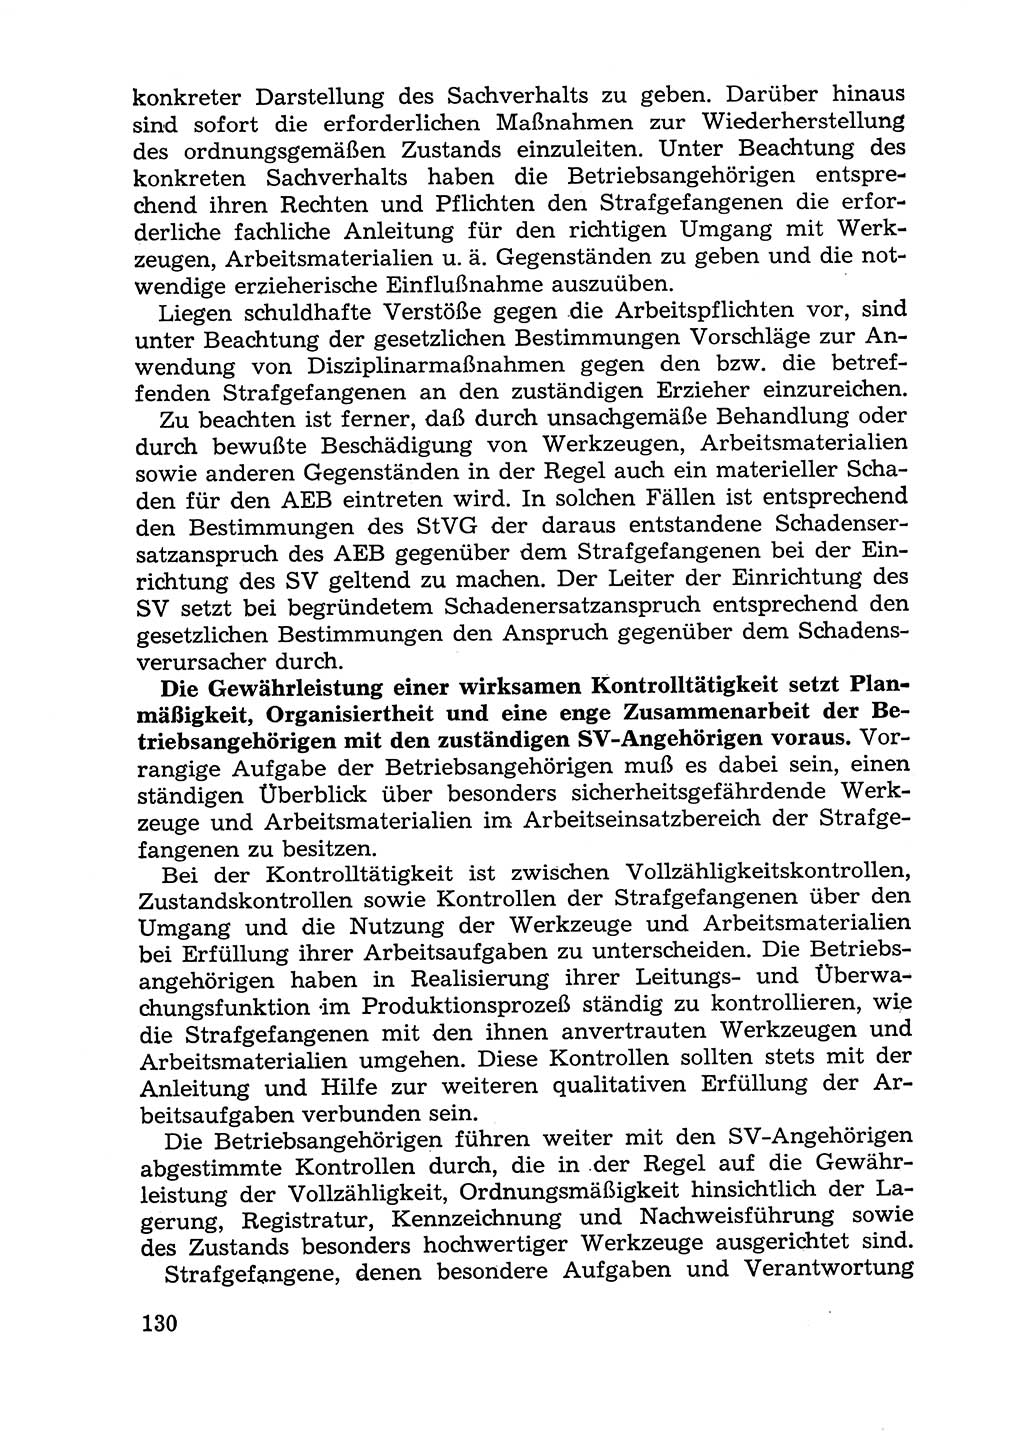 Handbuch für Betriebsangehörige, Abteilung Strafvollzug (SV) [Ministerium des Innern (MdI) Deutsche Demokratische Republik (DDR)] 1981, Seite 130 (Hb. BA Abt. SV MdI DDR 1981, S. 130)